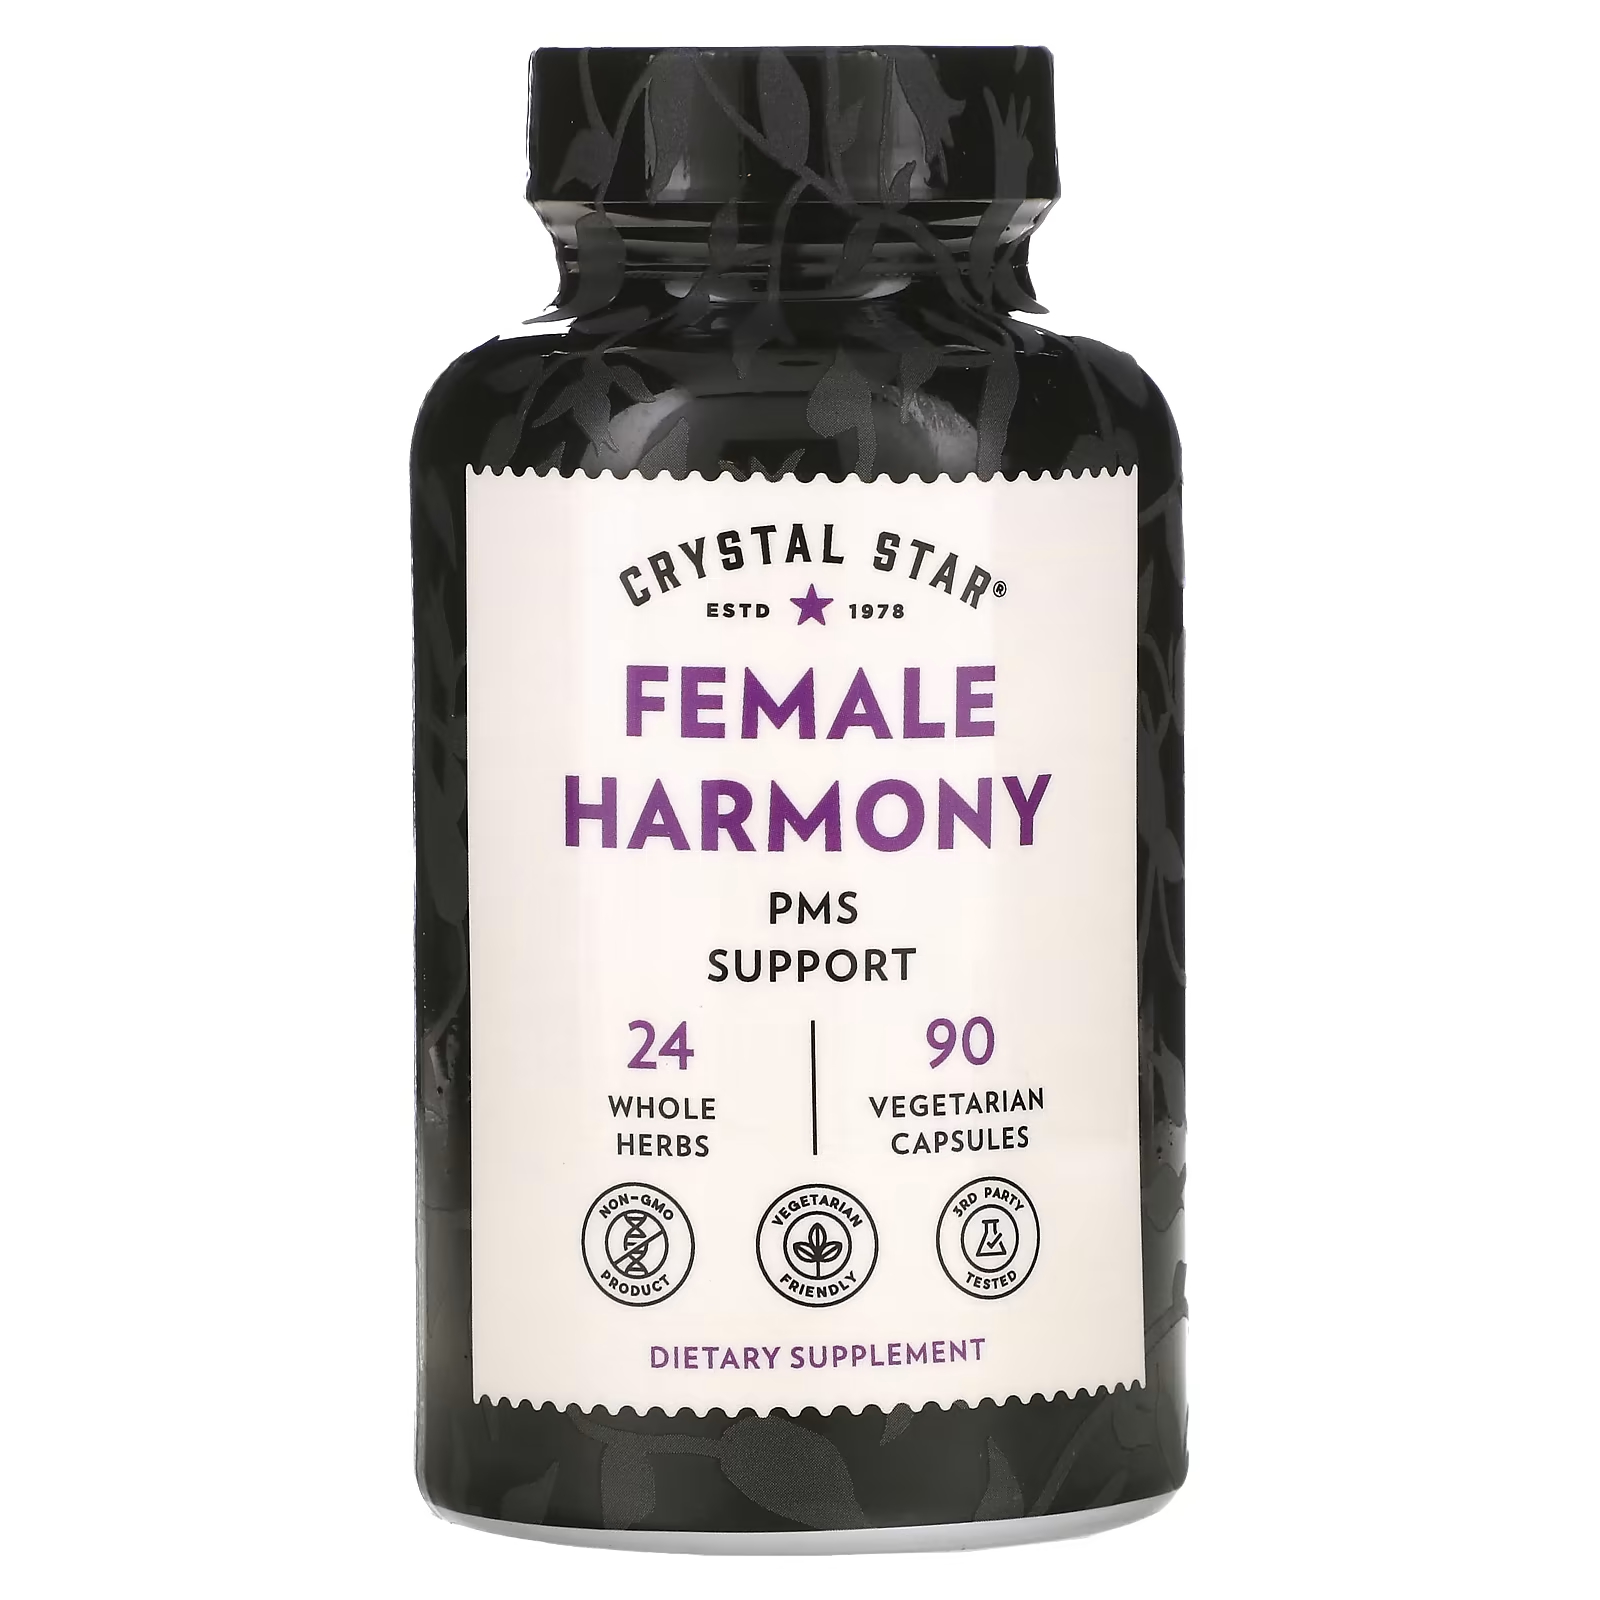 управляй гормонами счастья Женская Гармония Crystal Star без ГМО, 90 вегетарианских капсул